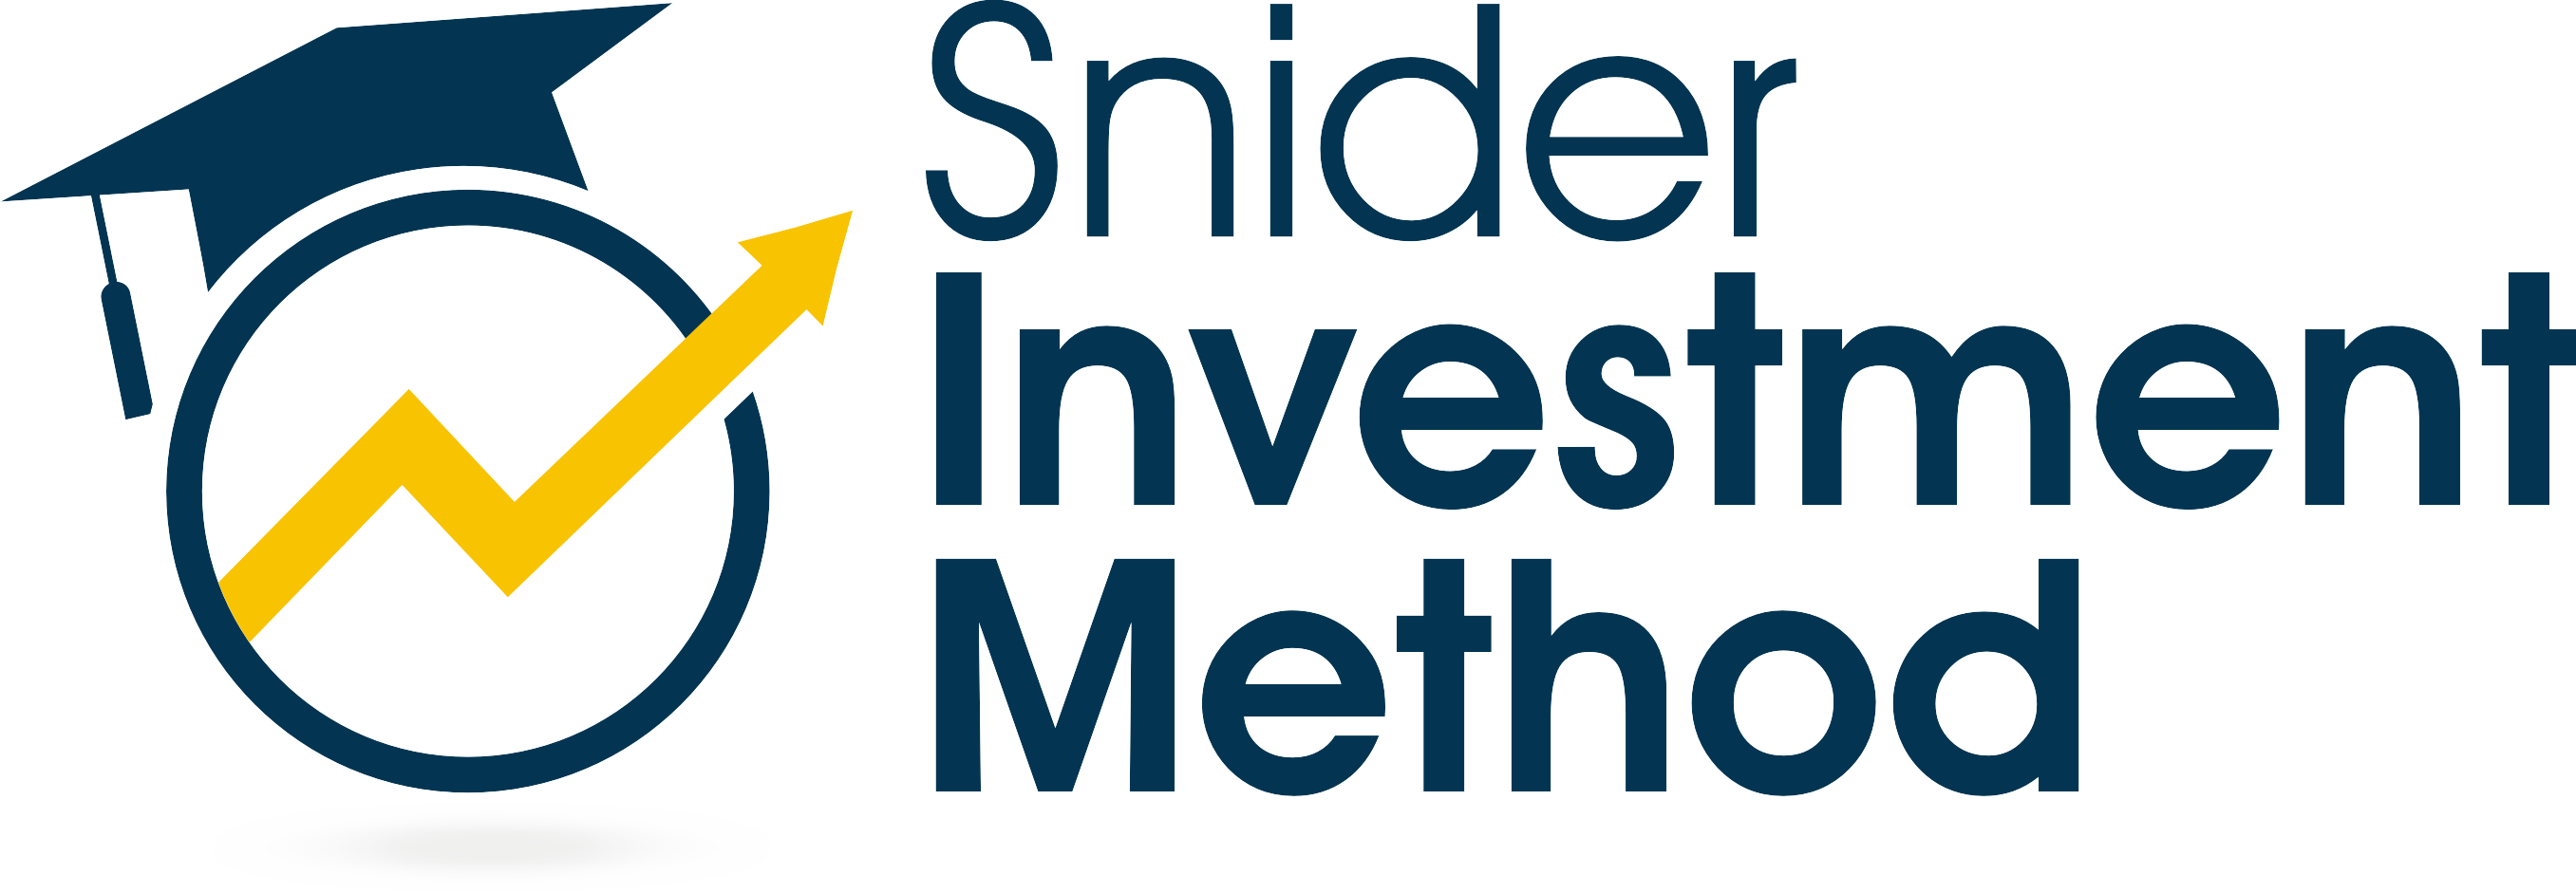 Snider Investment Method